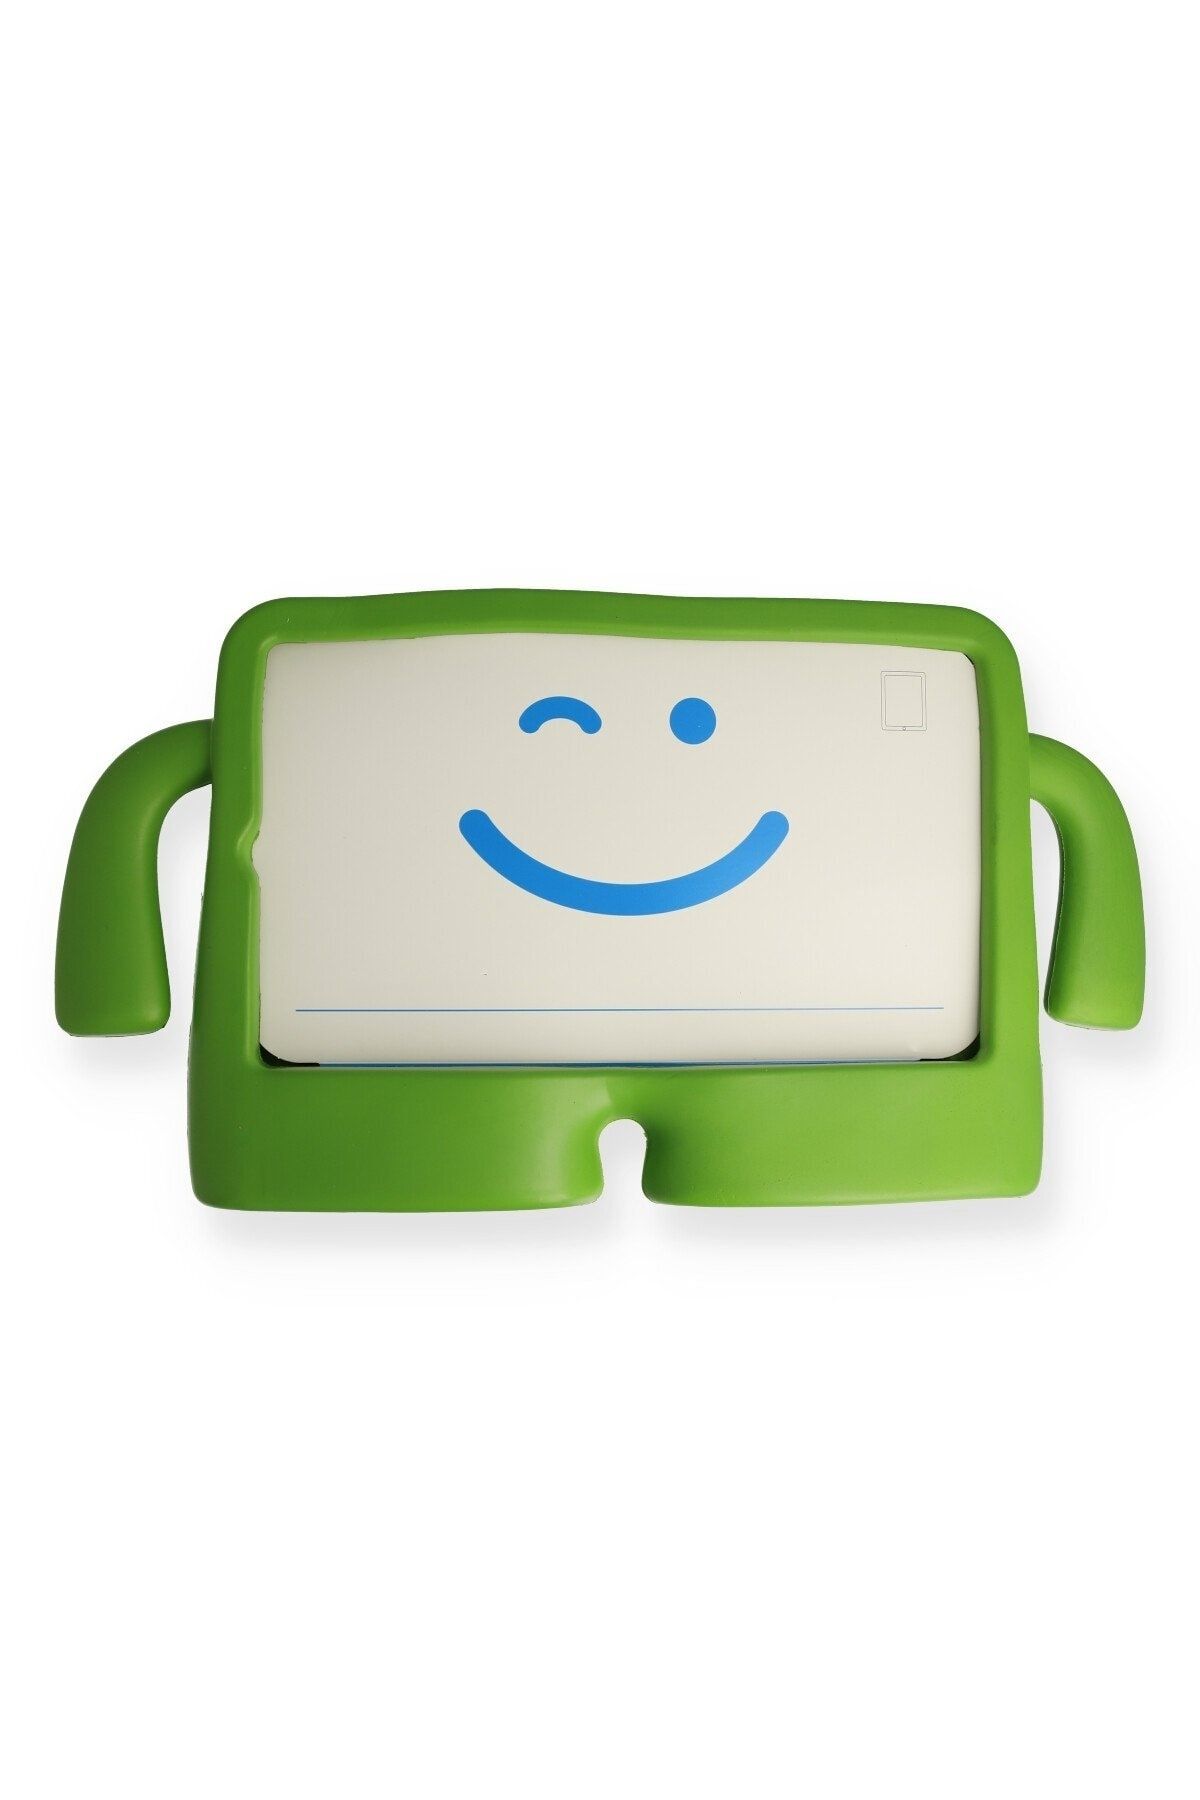 Bilişim Aksesuar Ipad Mini 2 Kılıf Karakter Tablet Silikon - Yeşil